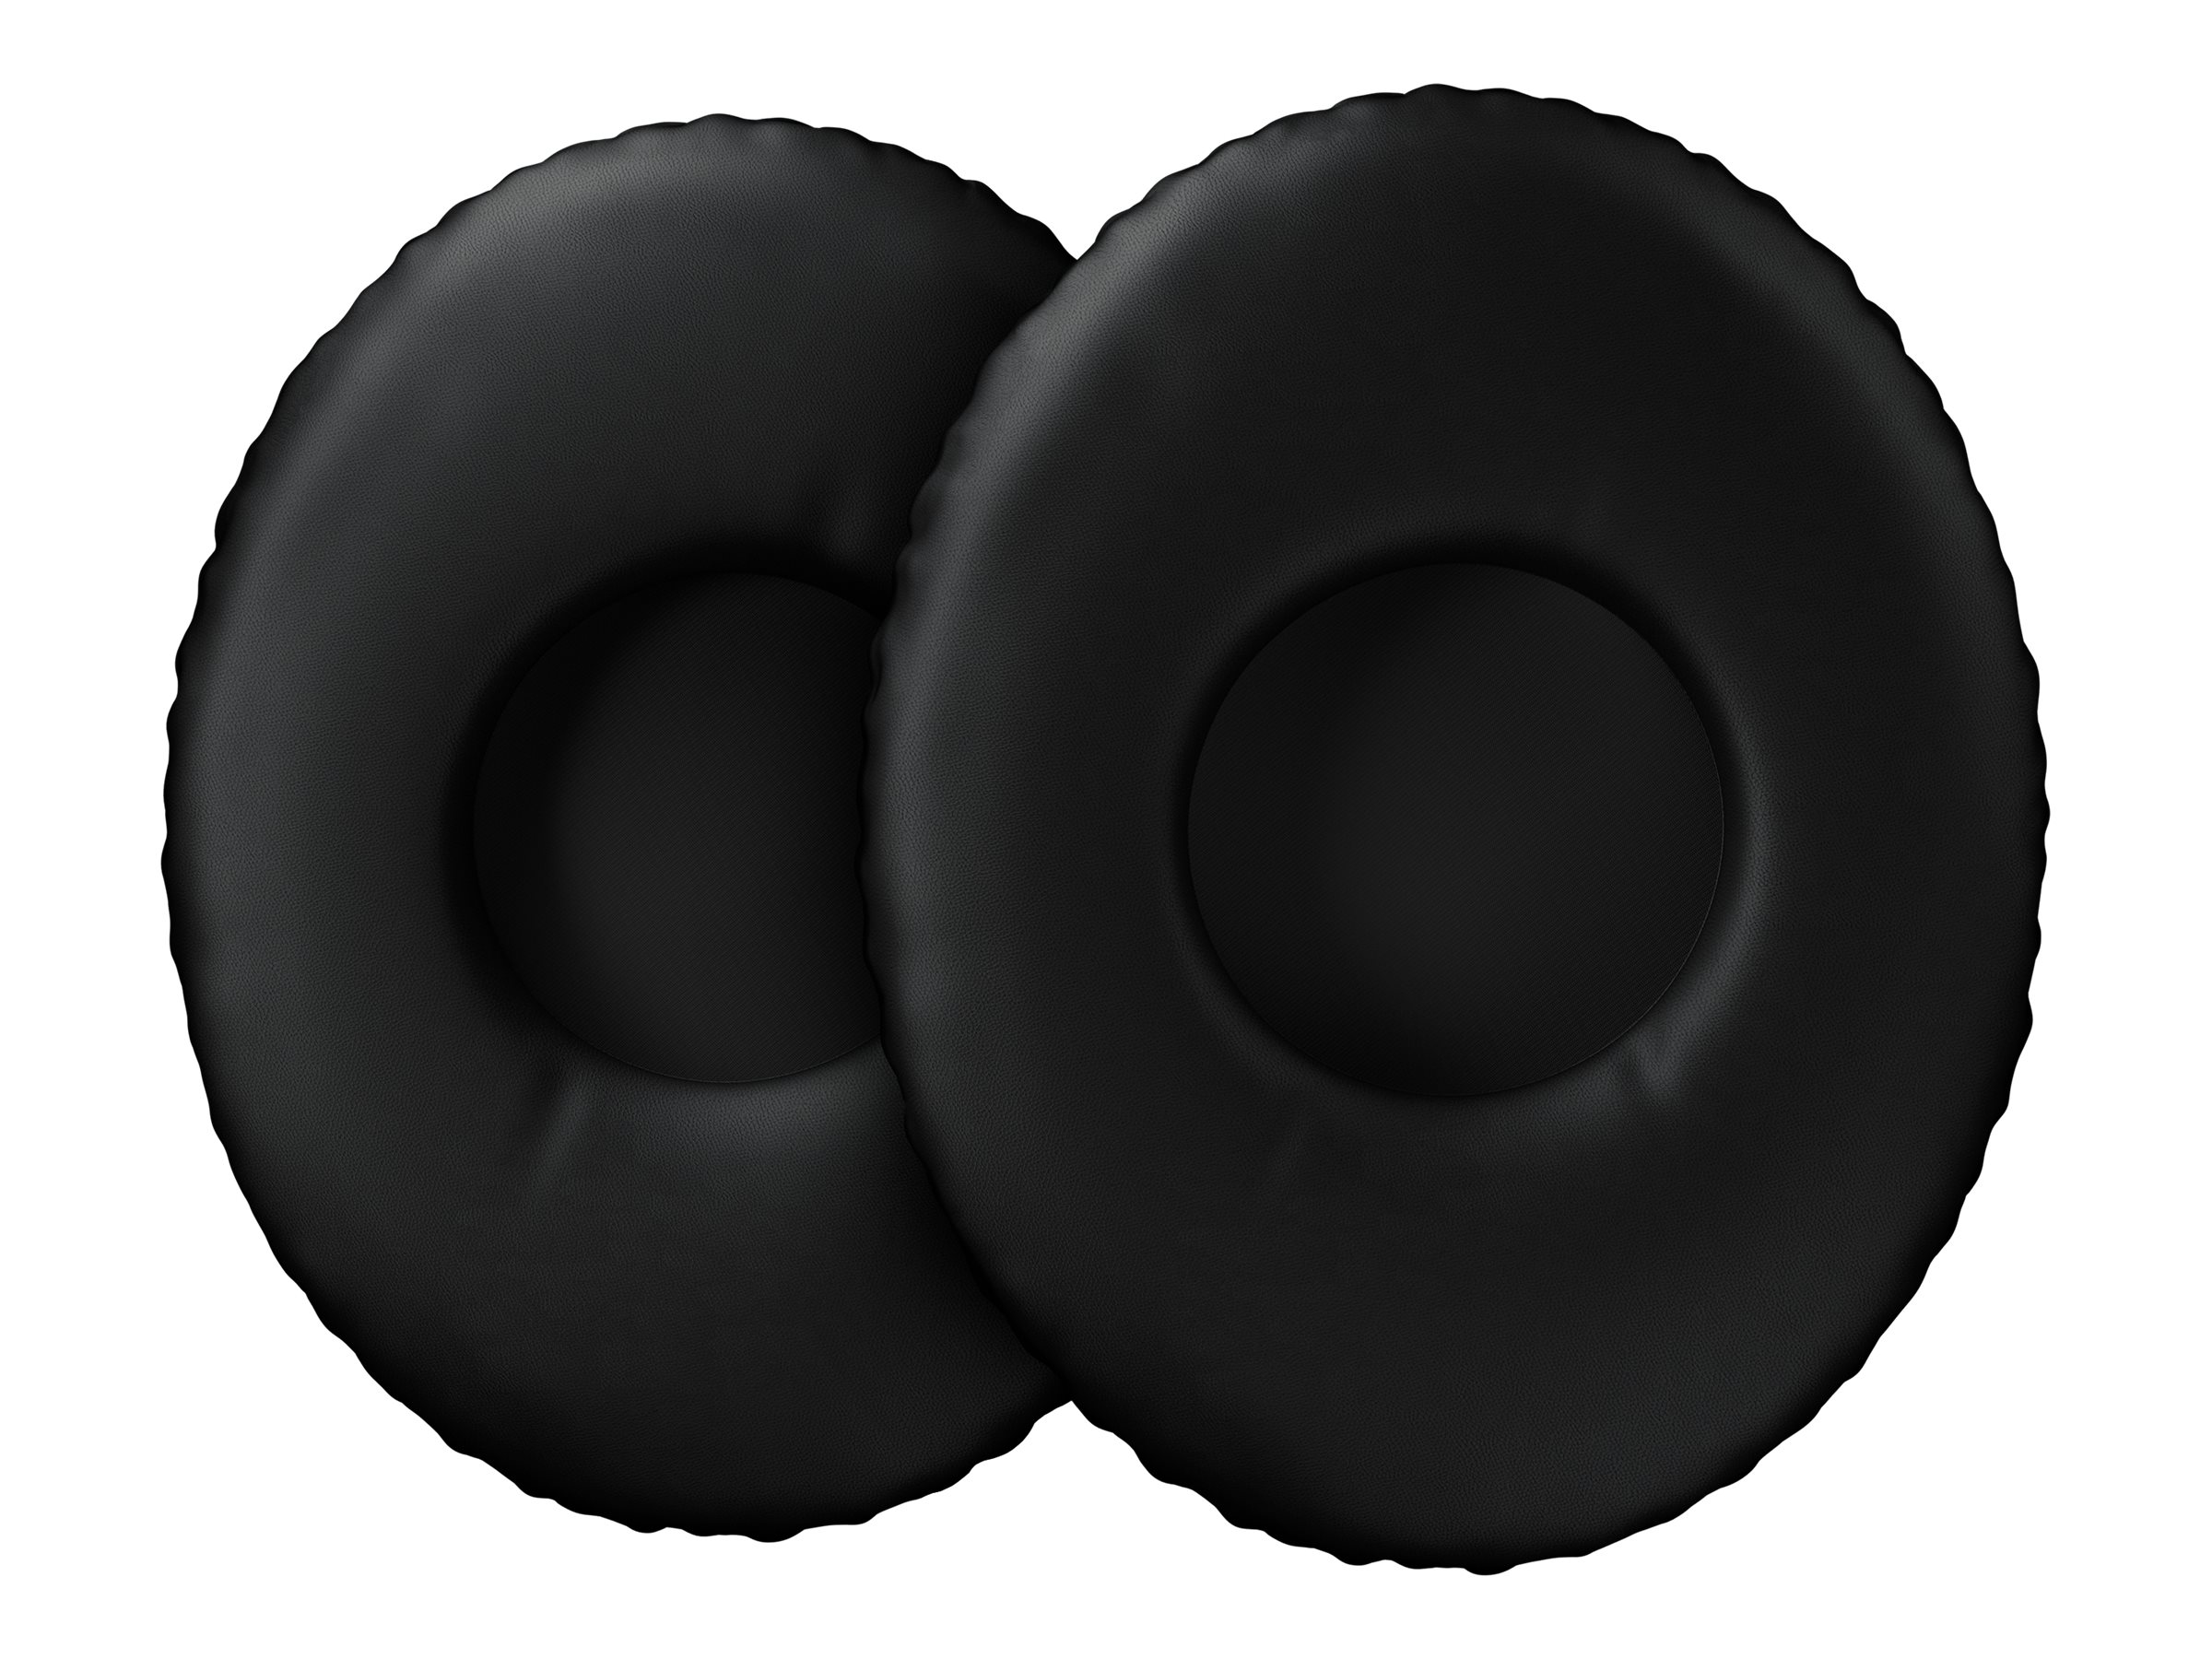 EPOS - Protections auditives pour casque (pack de 2) - pour ADAPT 160 ANC USB, 160 ANC USB-C - 1000880 - Accessoires pour écouteurs